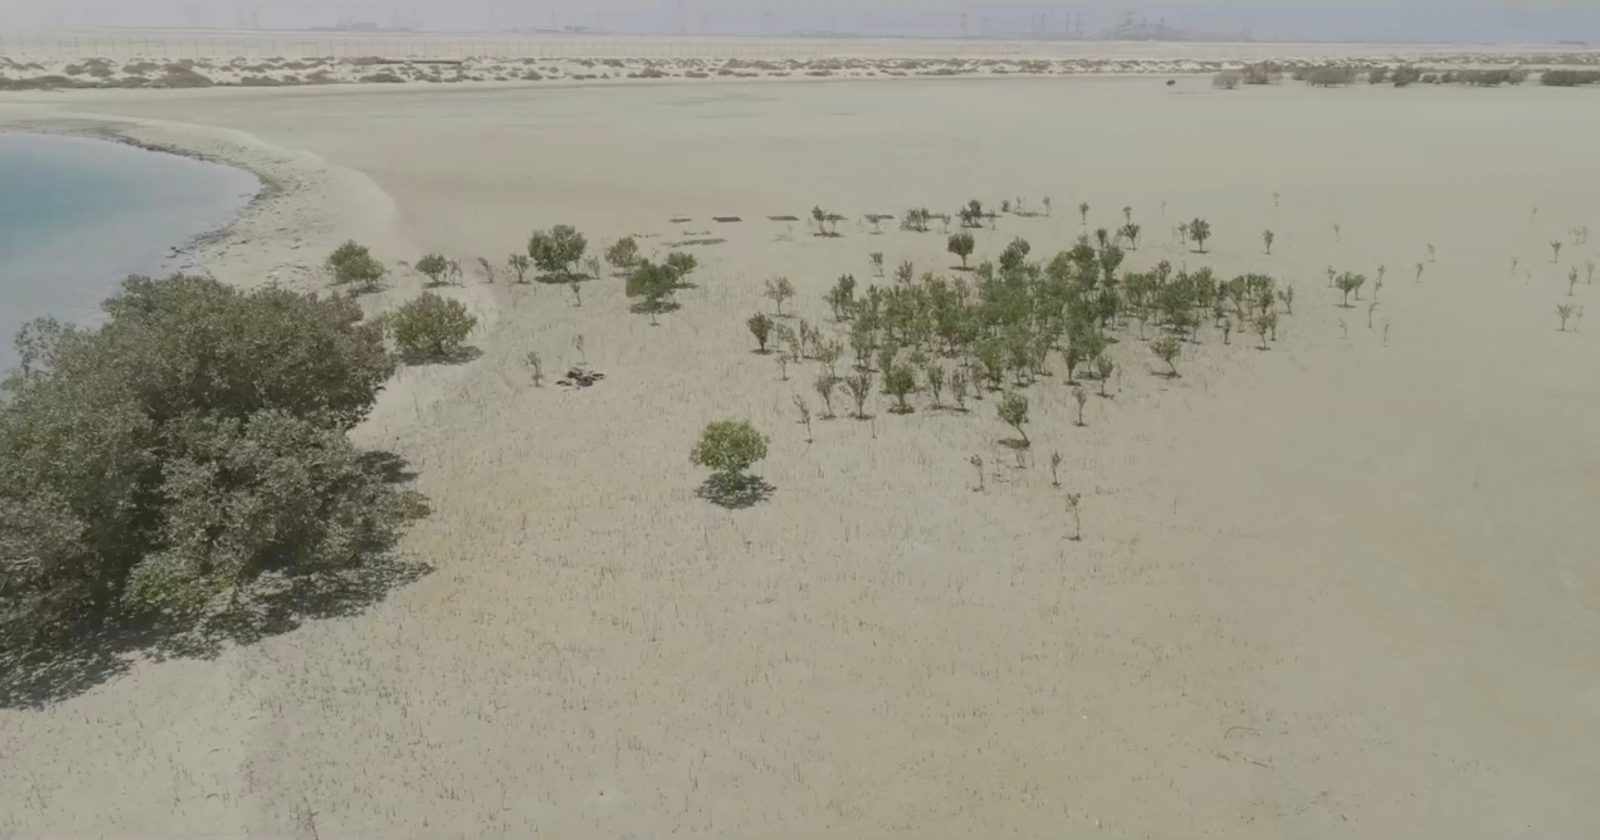 Abu Dhabi drones mangroves